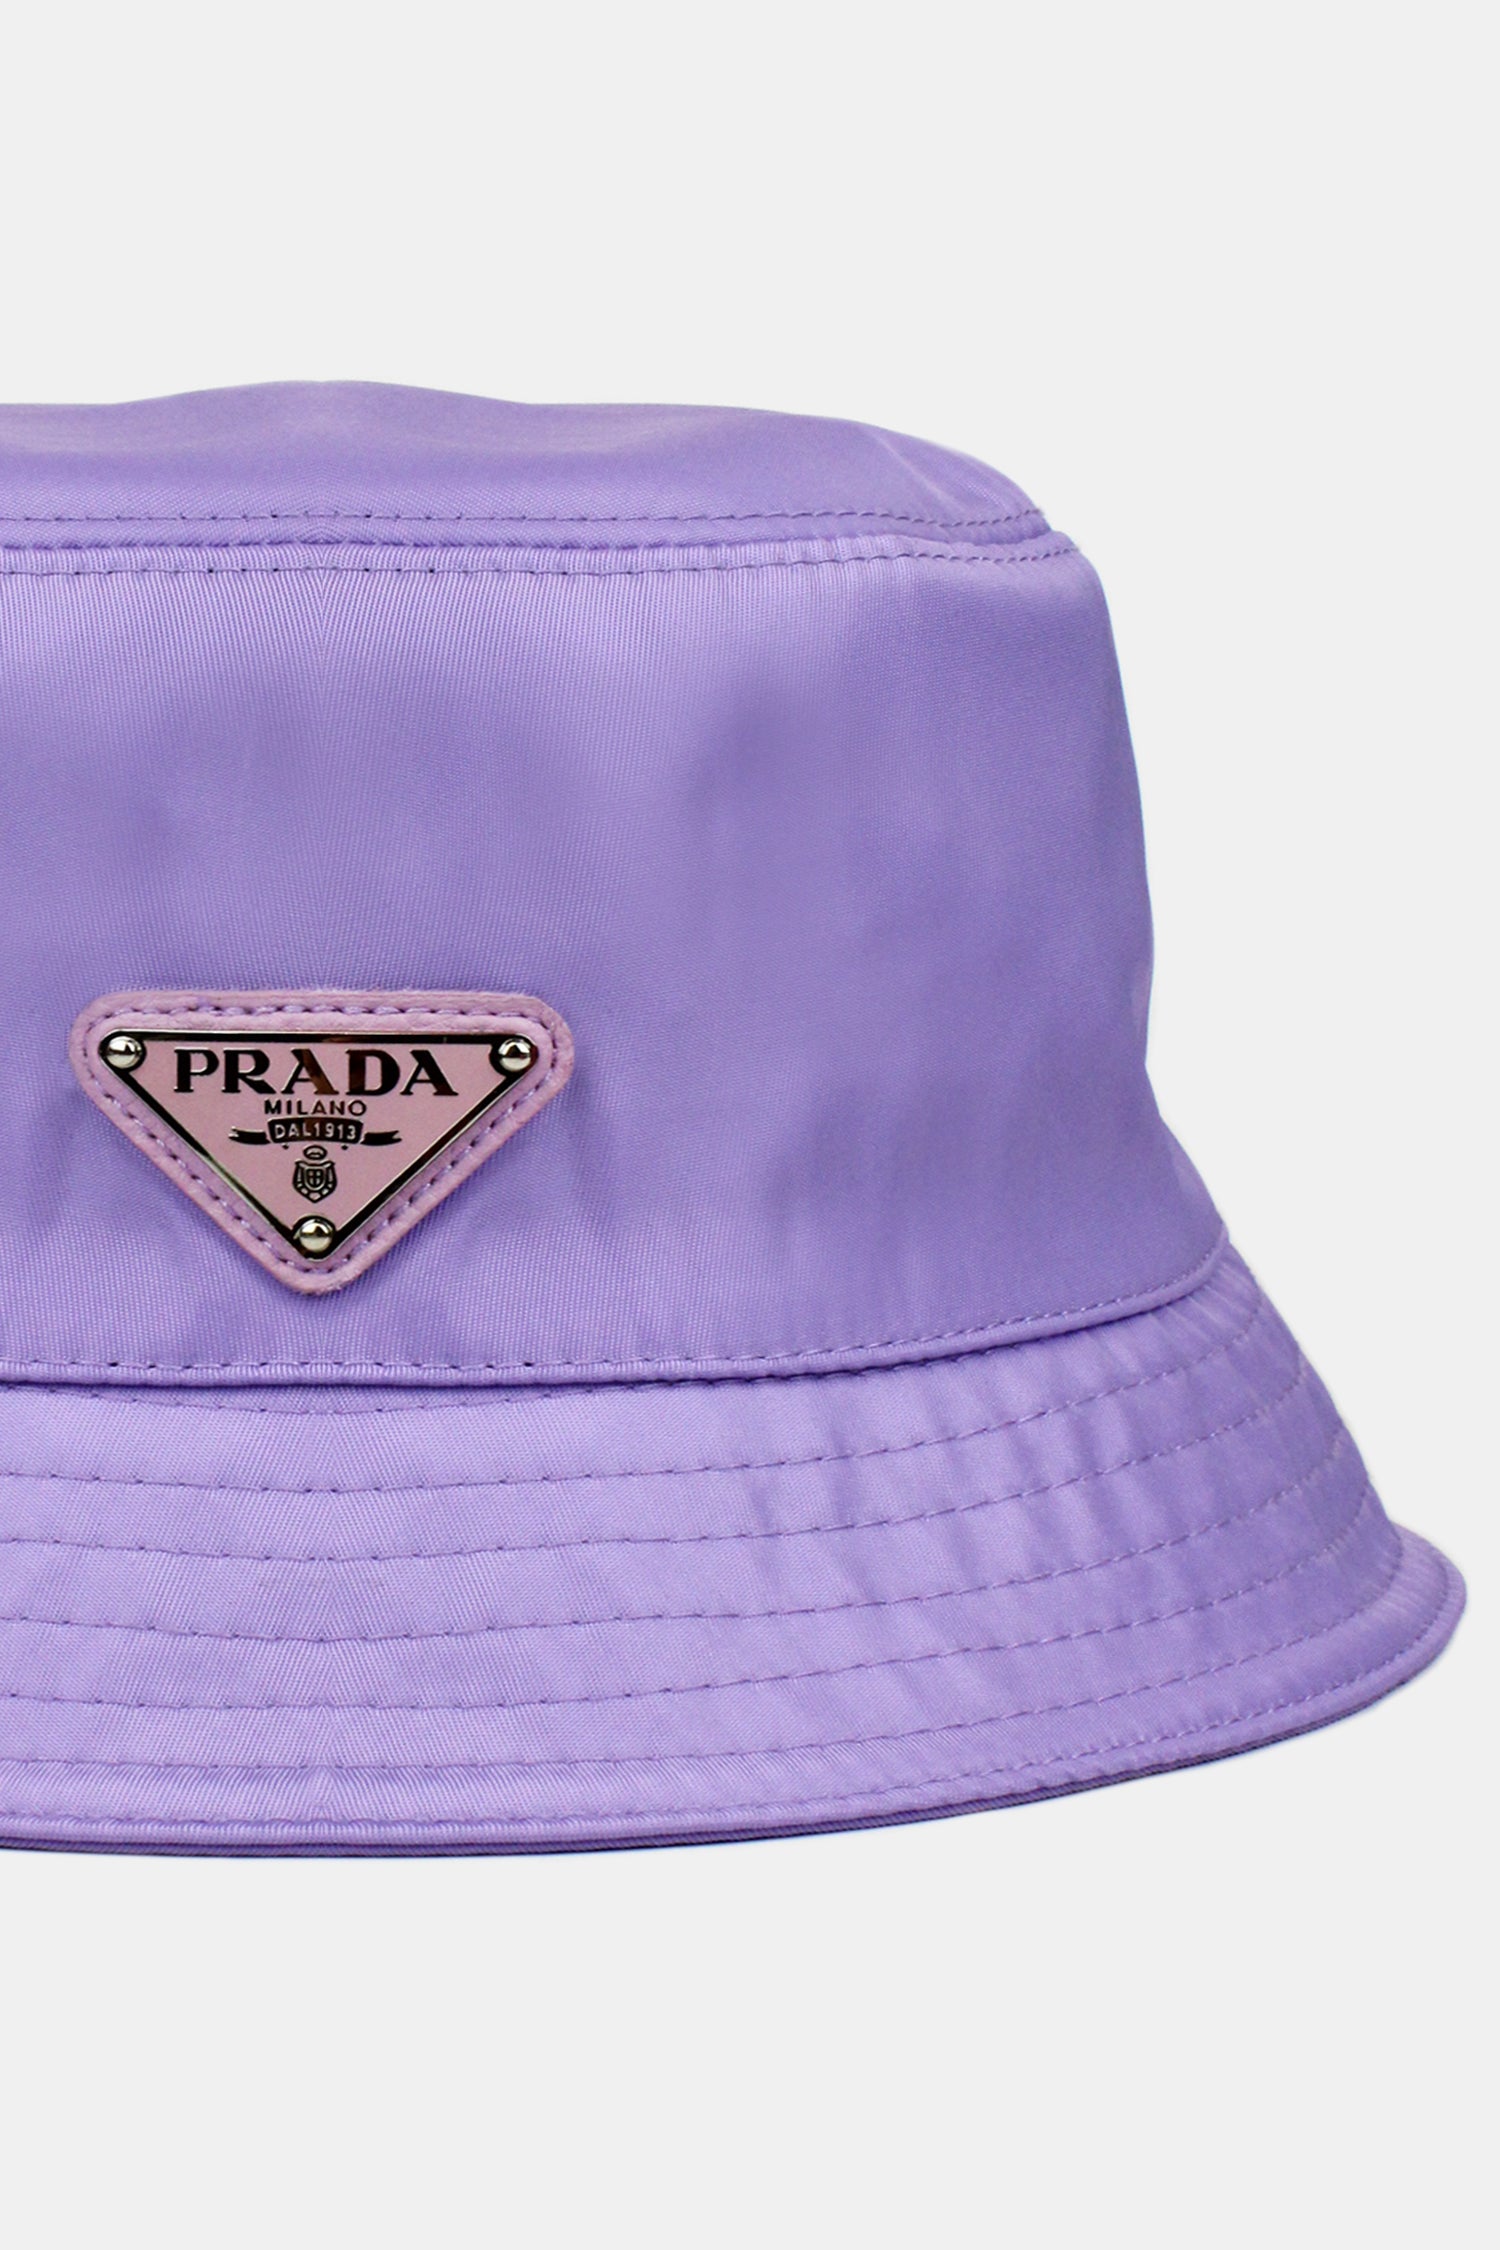 Bucket Hat Purple